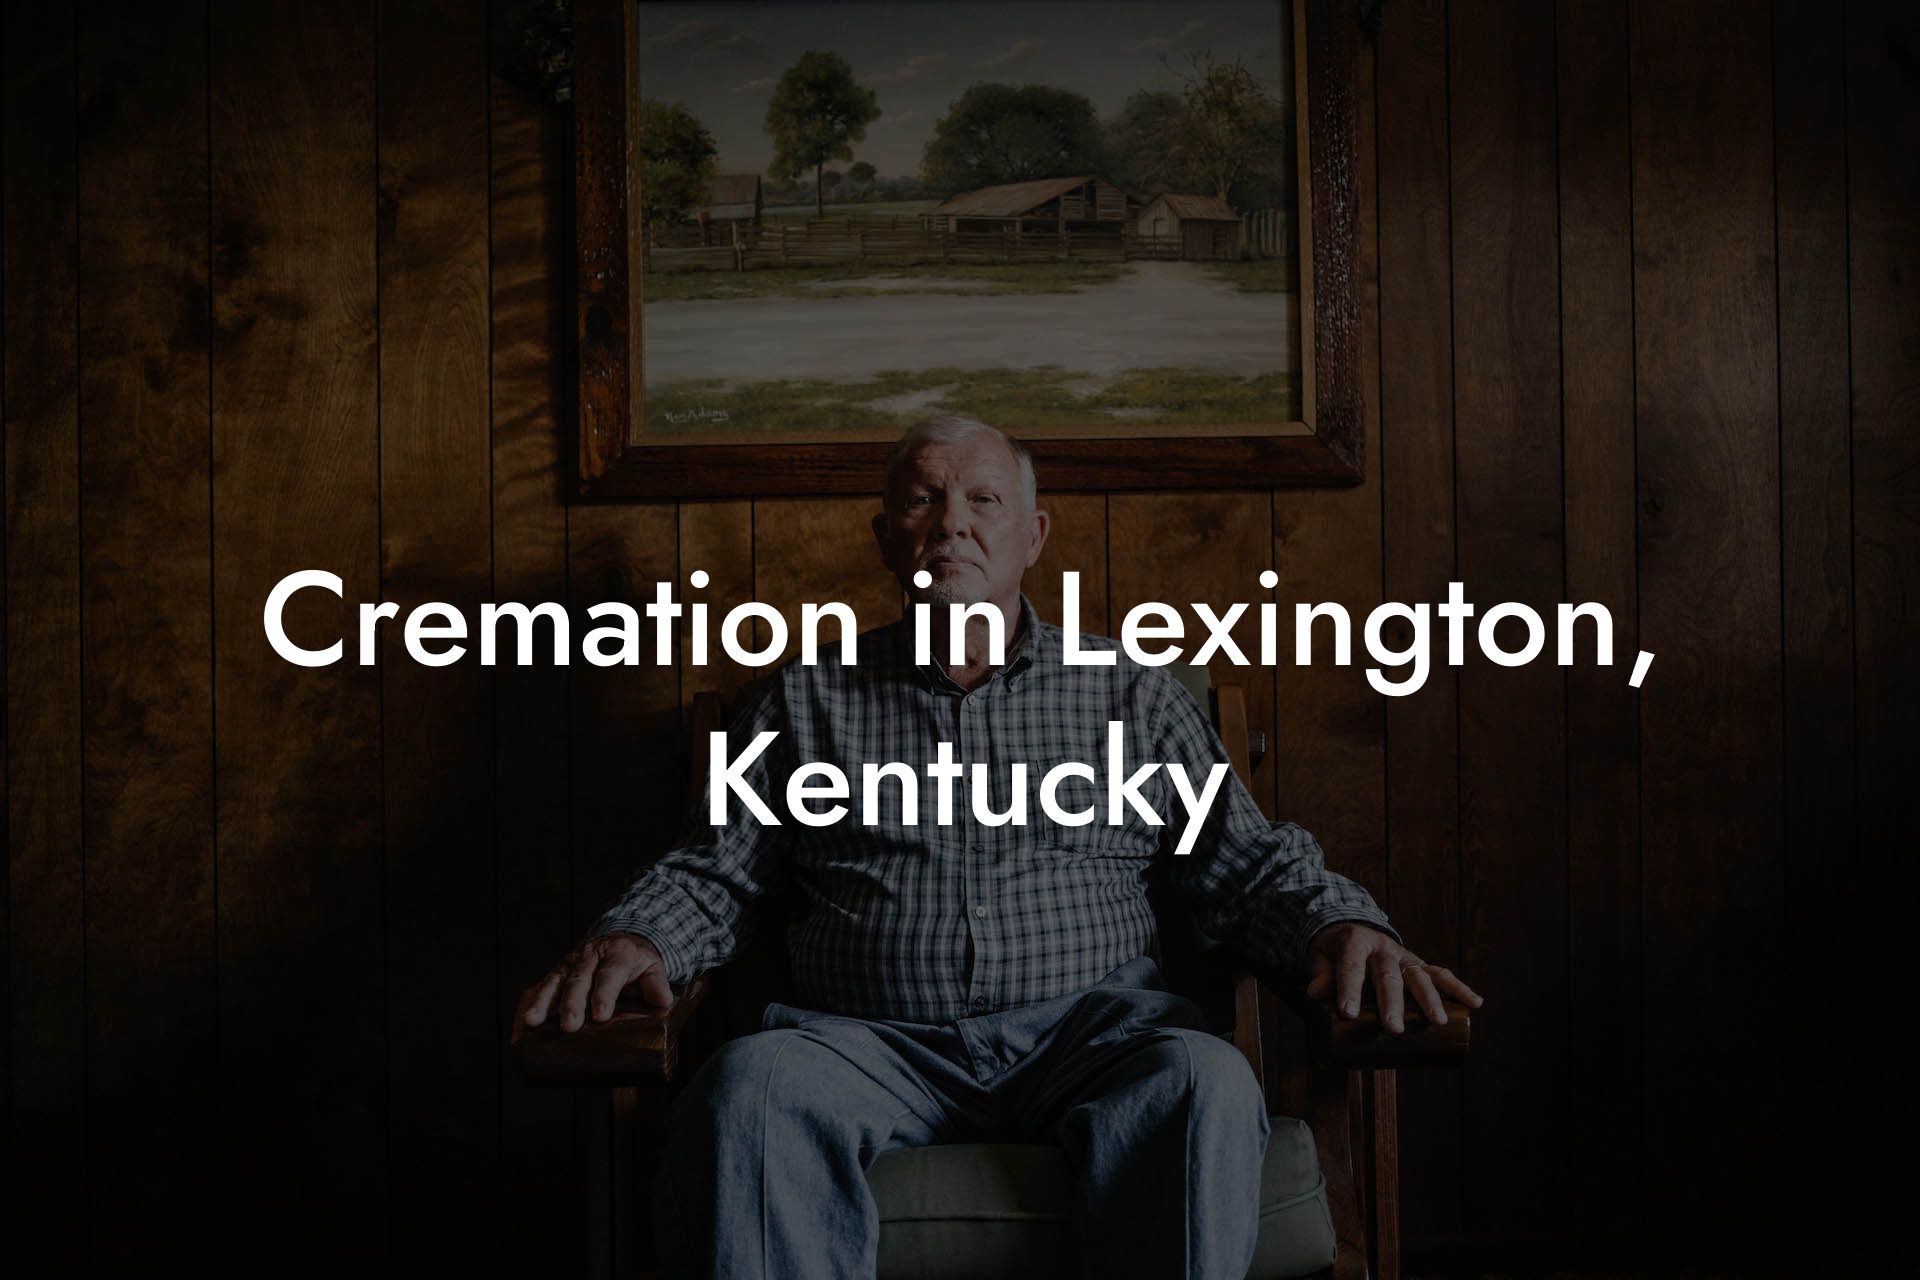 Cremation in Lexington, Kentucky